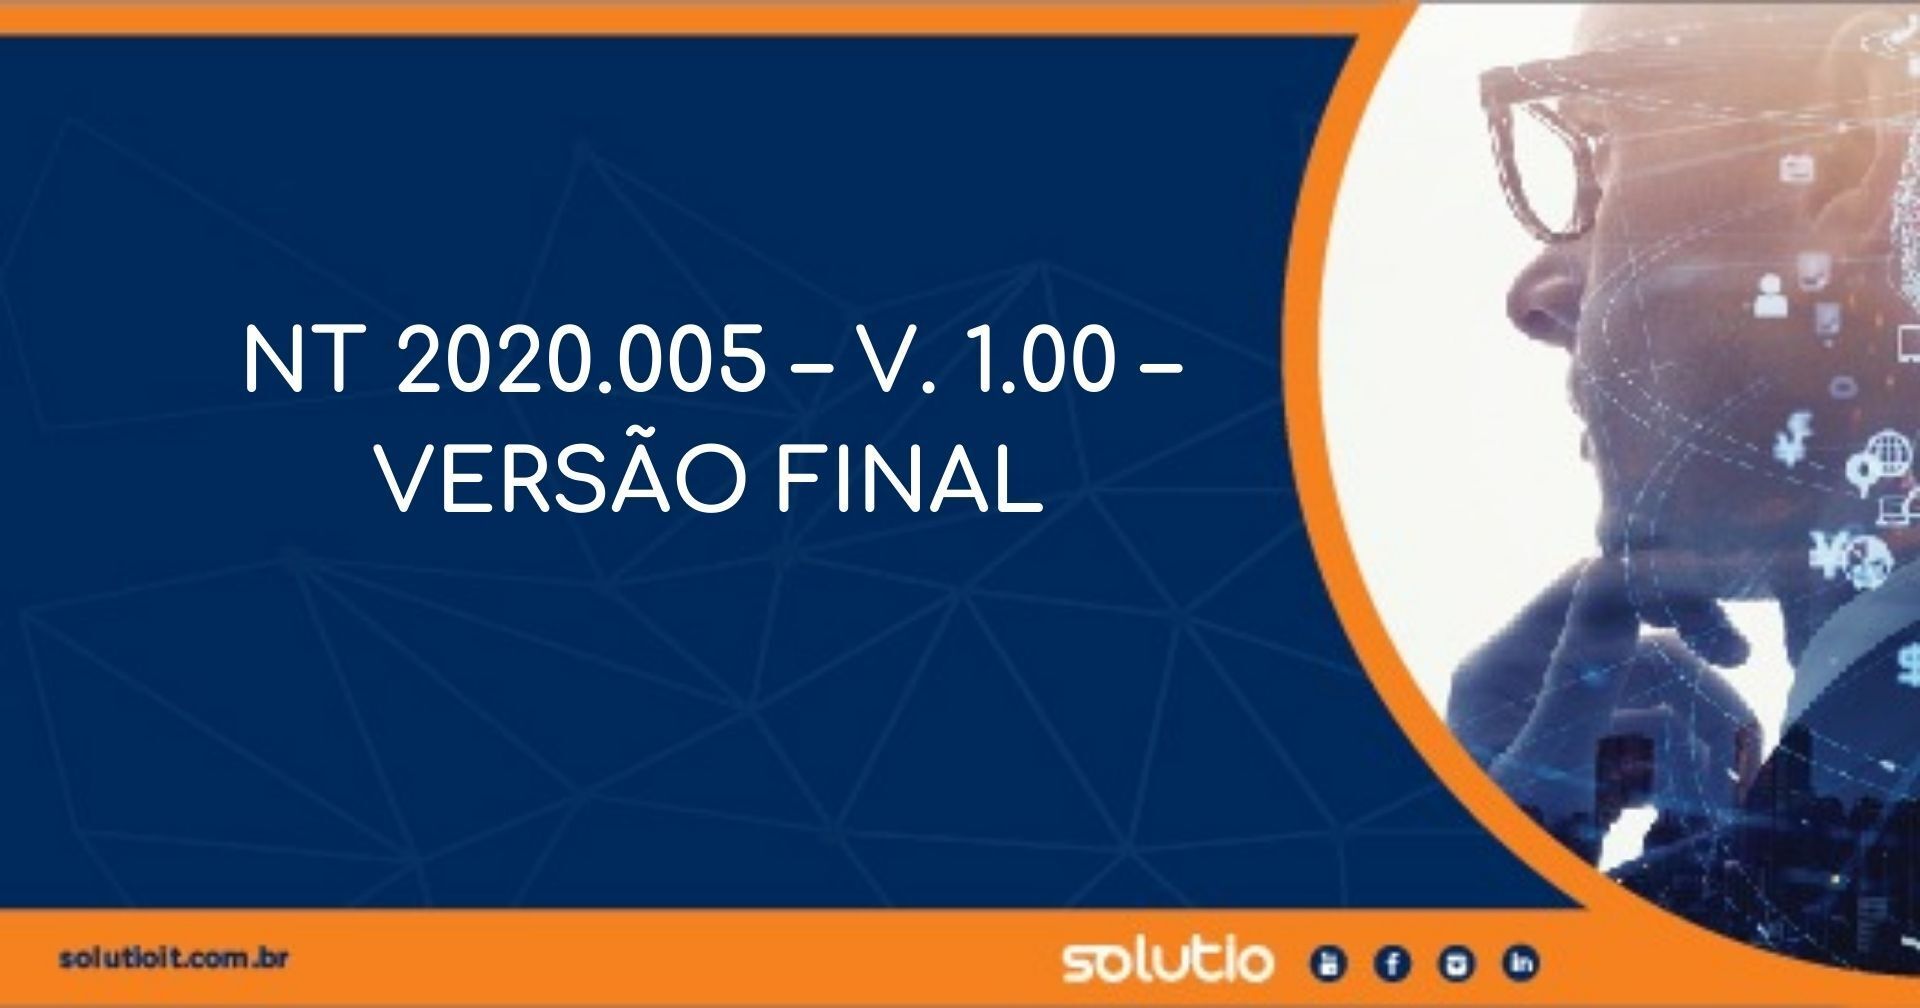 PUBLICADA A VERSÃO FINAL DA NT 2020.005 – V. 1.00